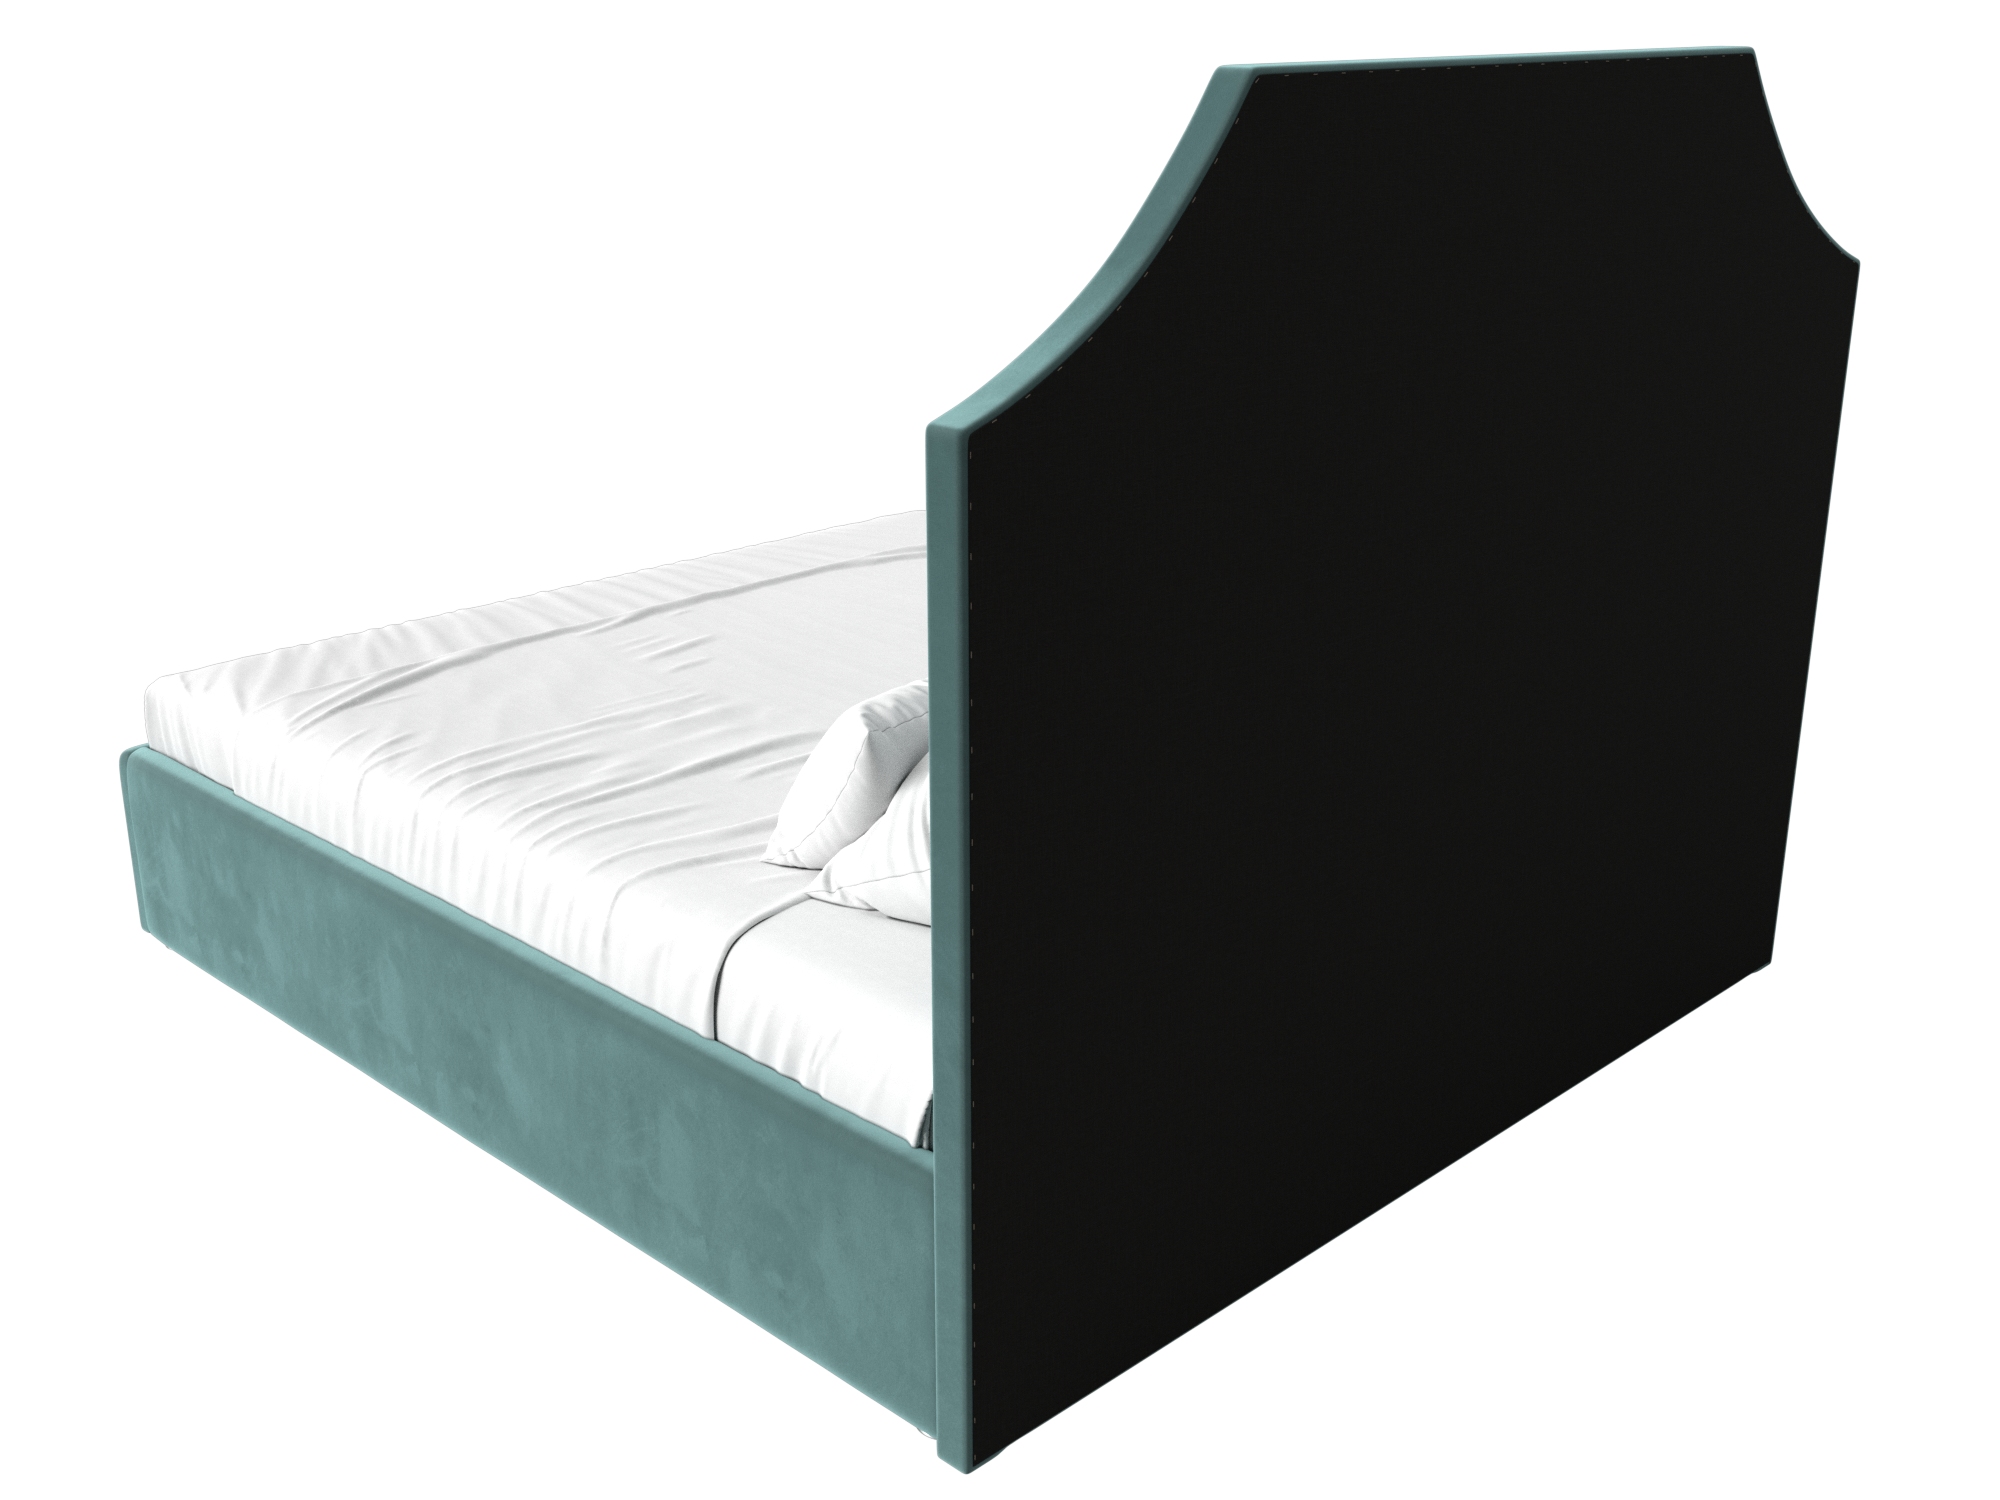 Интерьерная кровать Кантри 160 (бирюзовый)